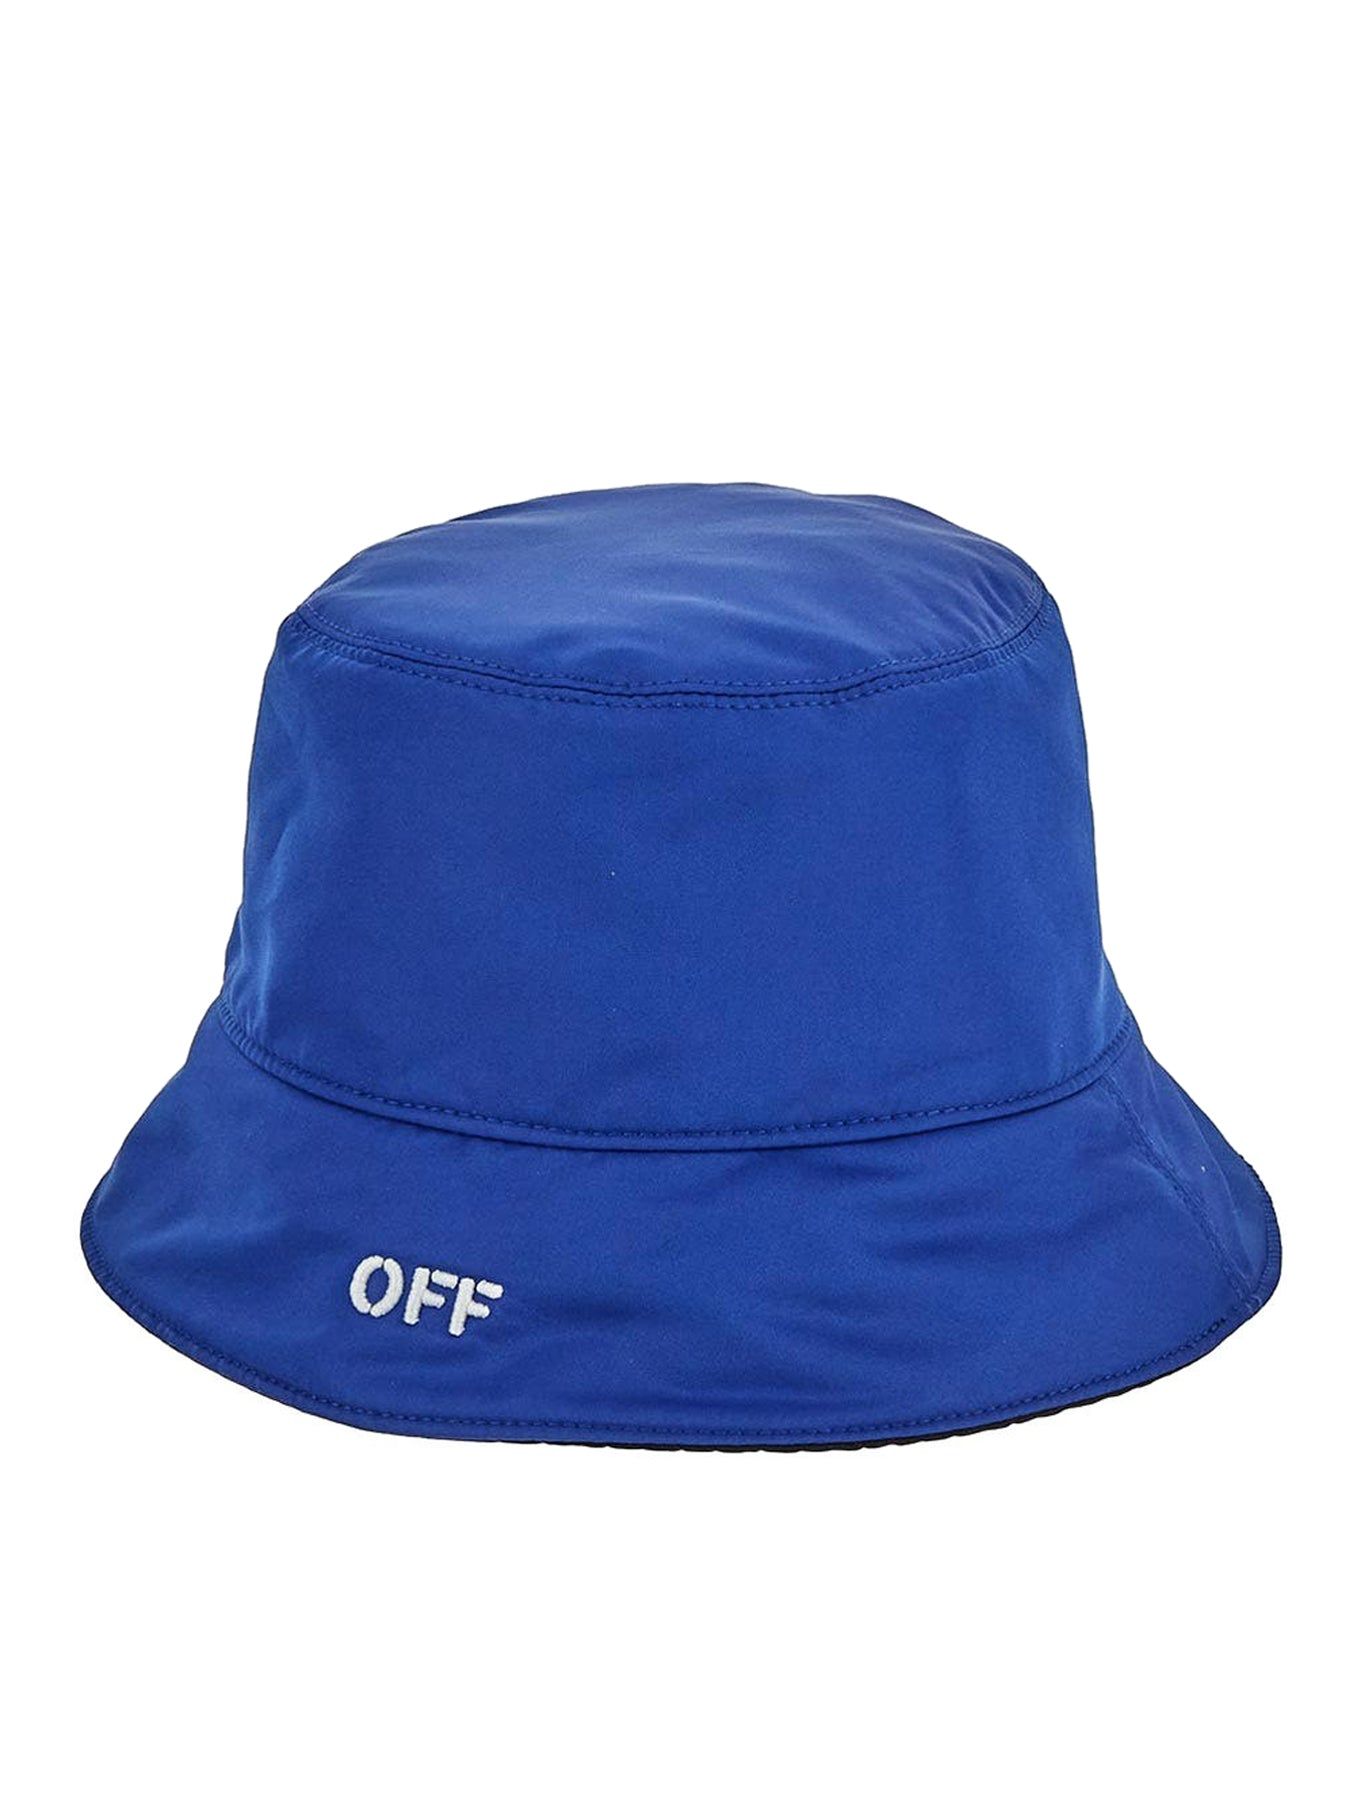 Off Stamp Reversible Bucket Hat